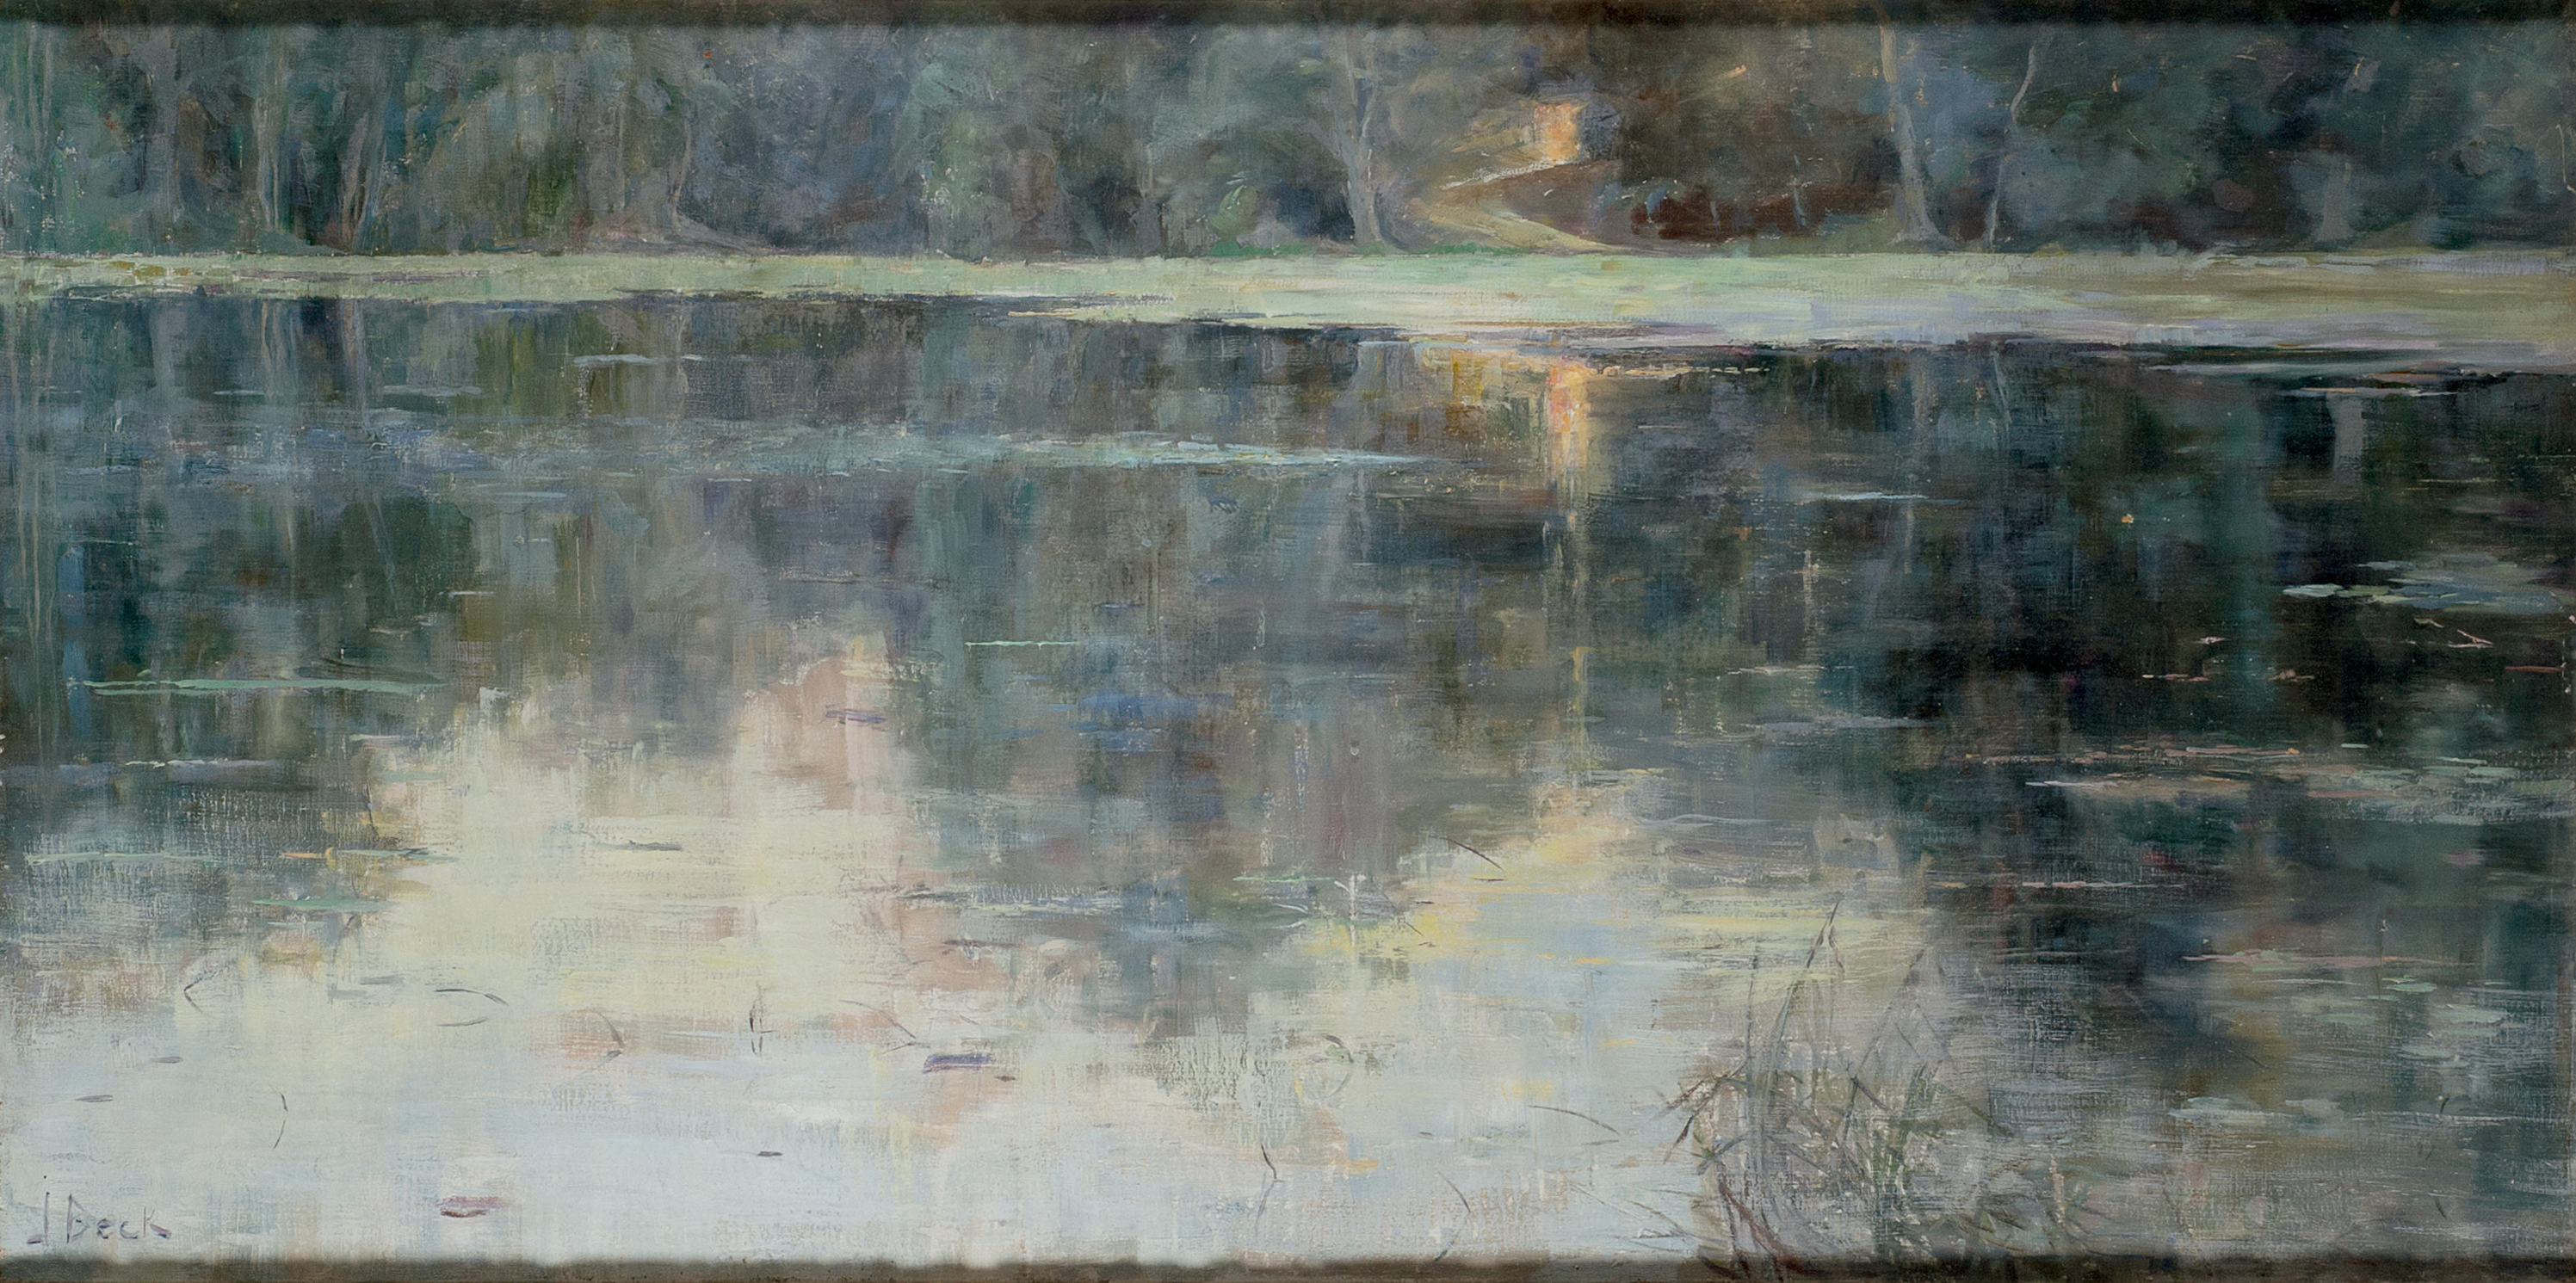 De Laatste Straal Zonneschijn by Julia Beck - 1888 - 50 x 100 cm 